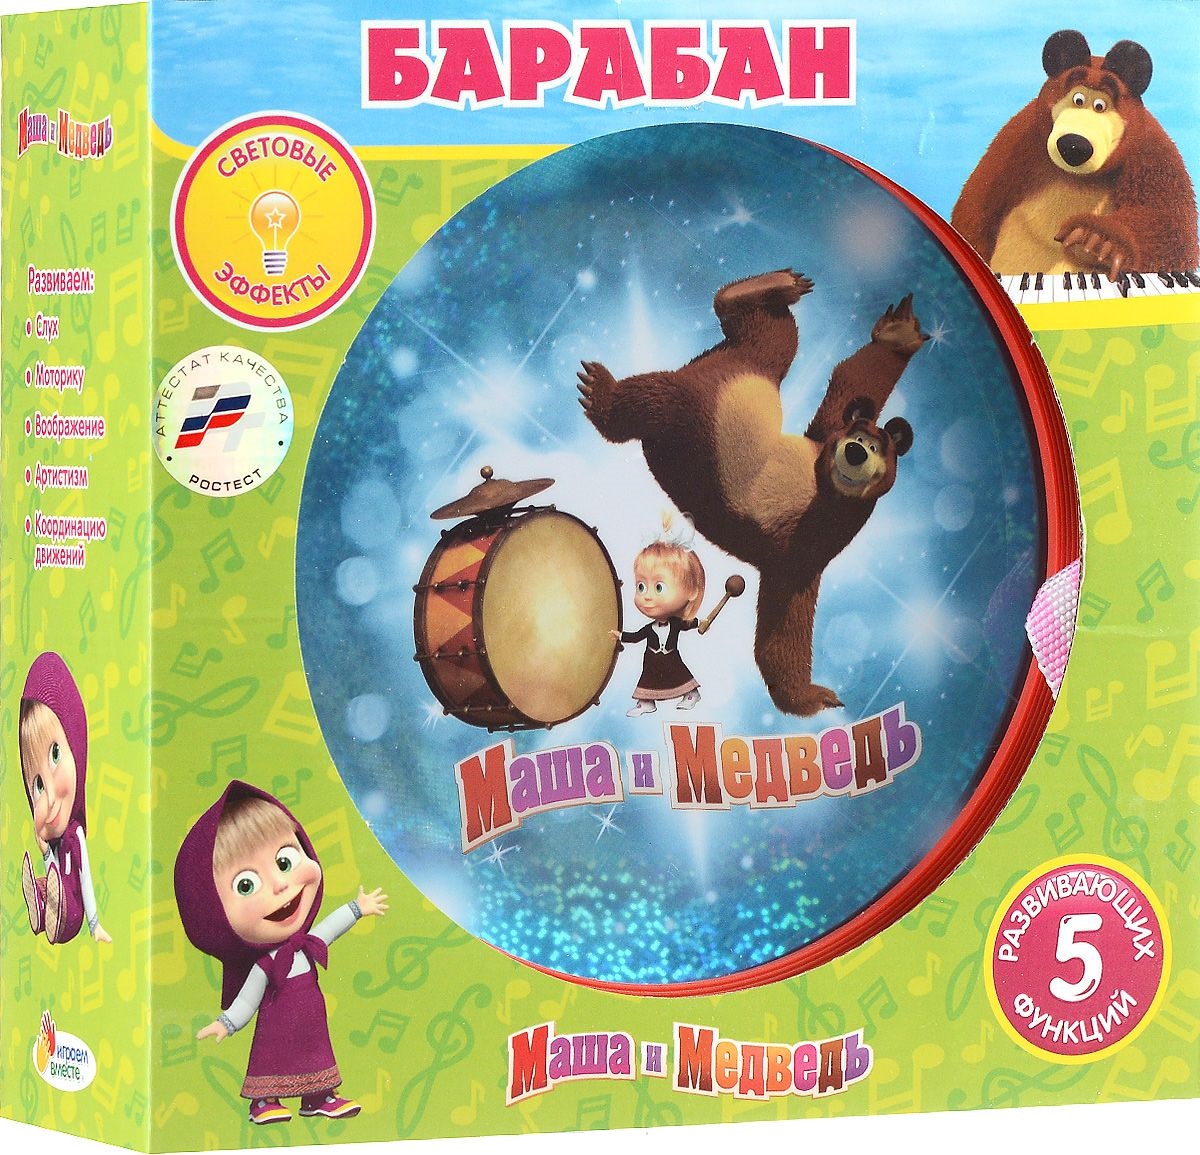 Барабан - Маша и Медведь, со световыми эффектами  